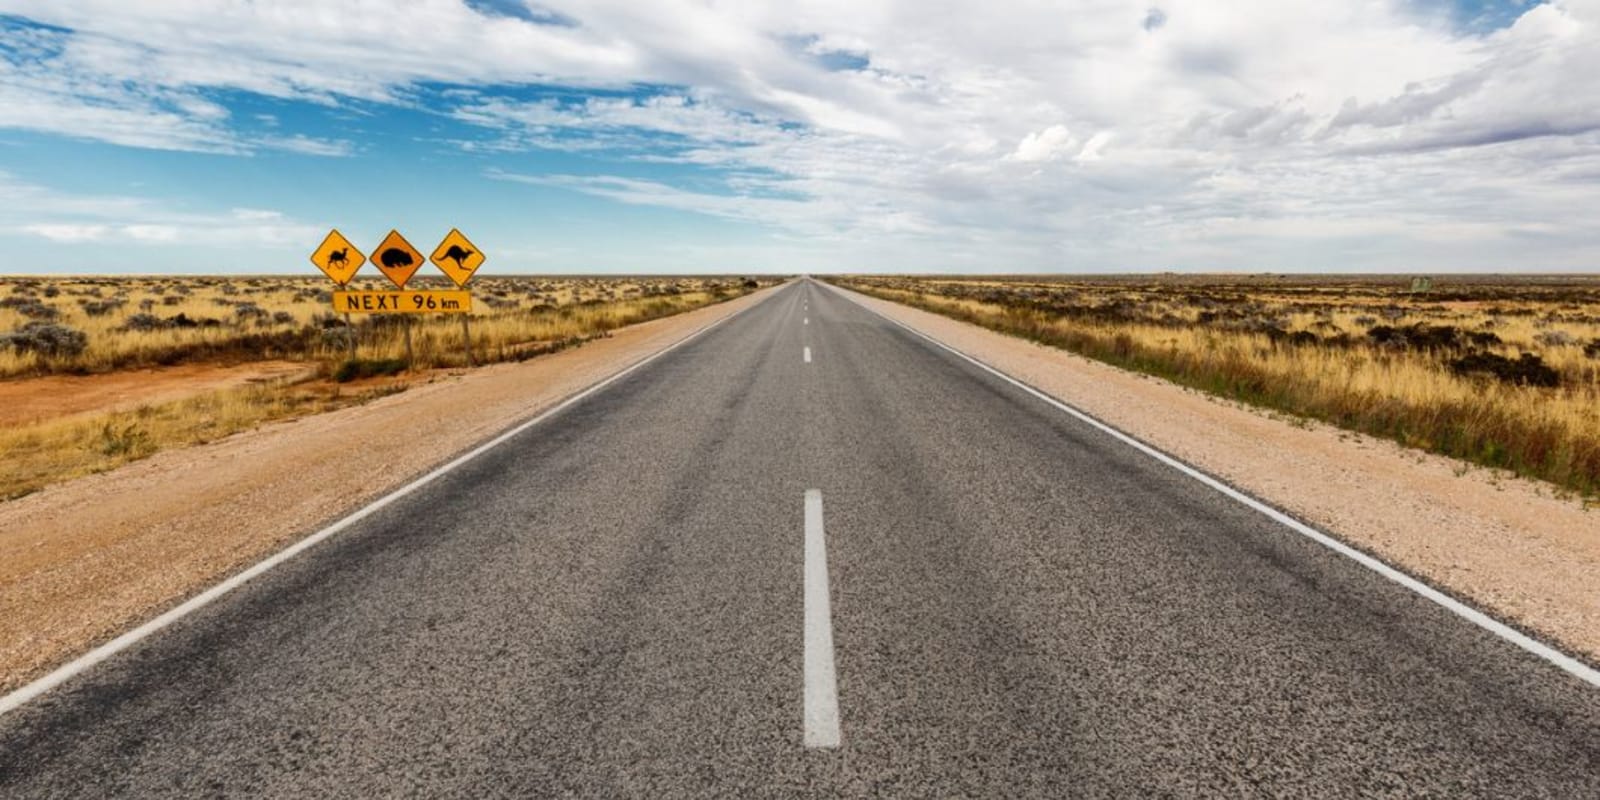 A long desert road in Australia